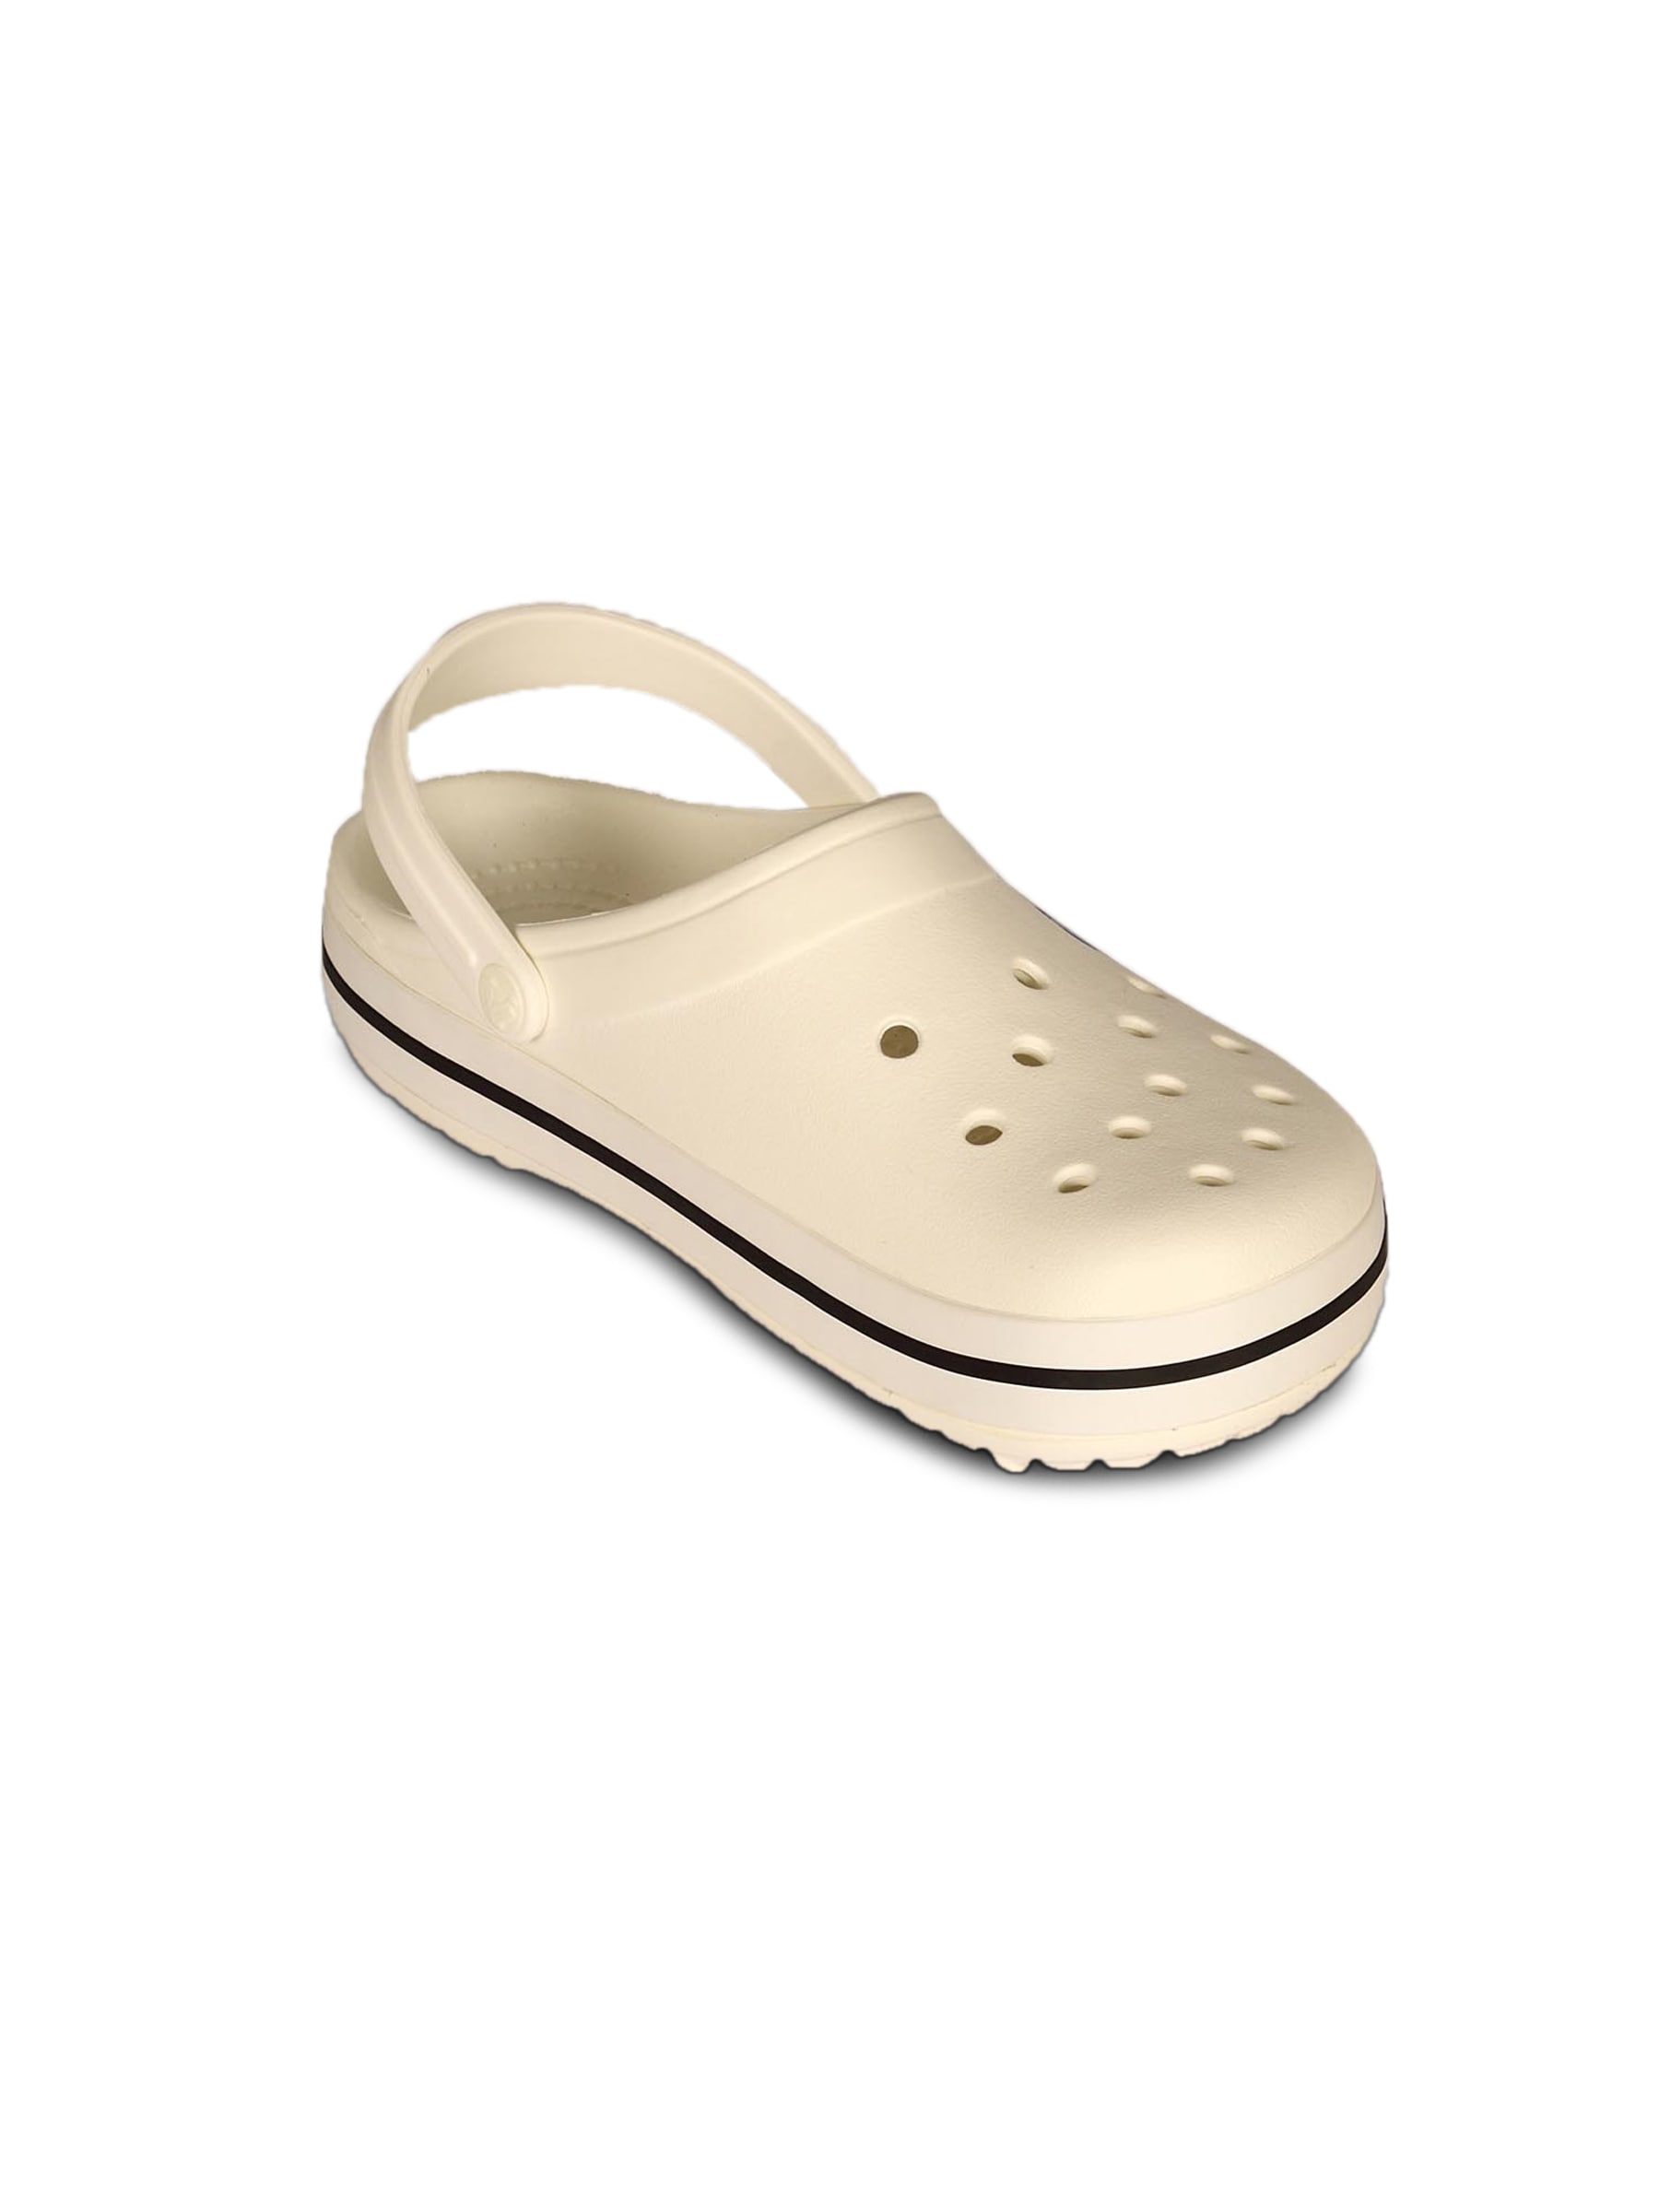 Crocs Unisex Crocband White Sandal